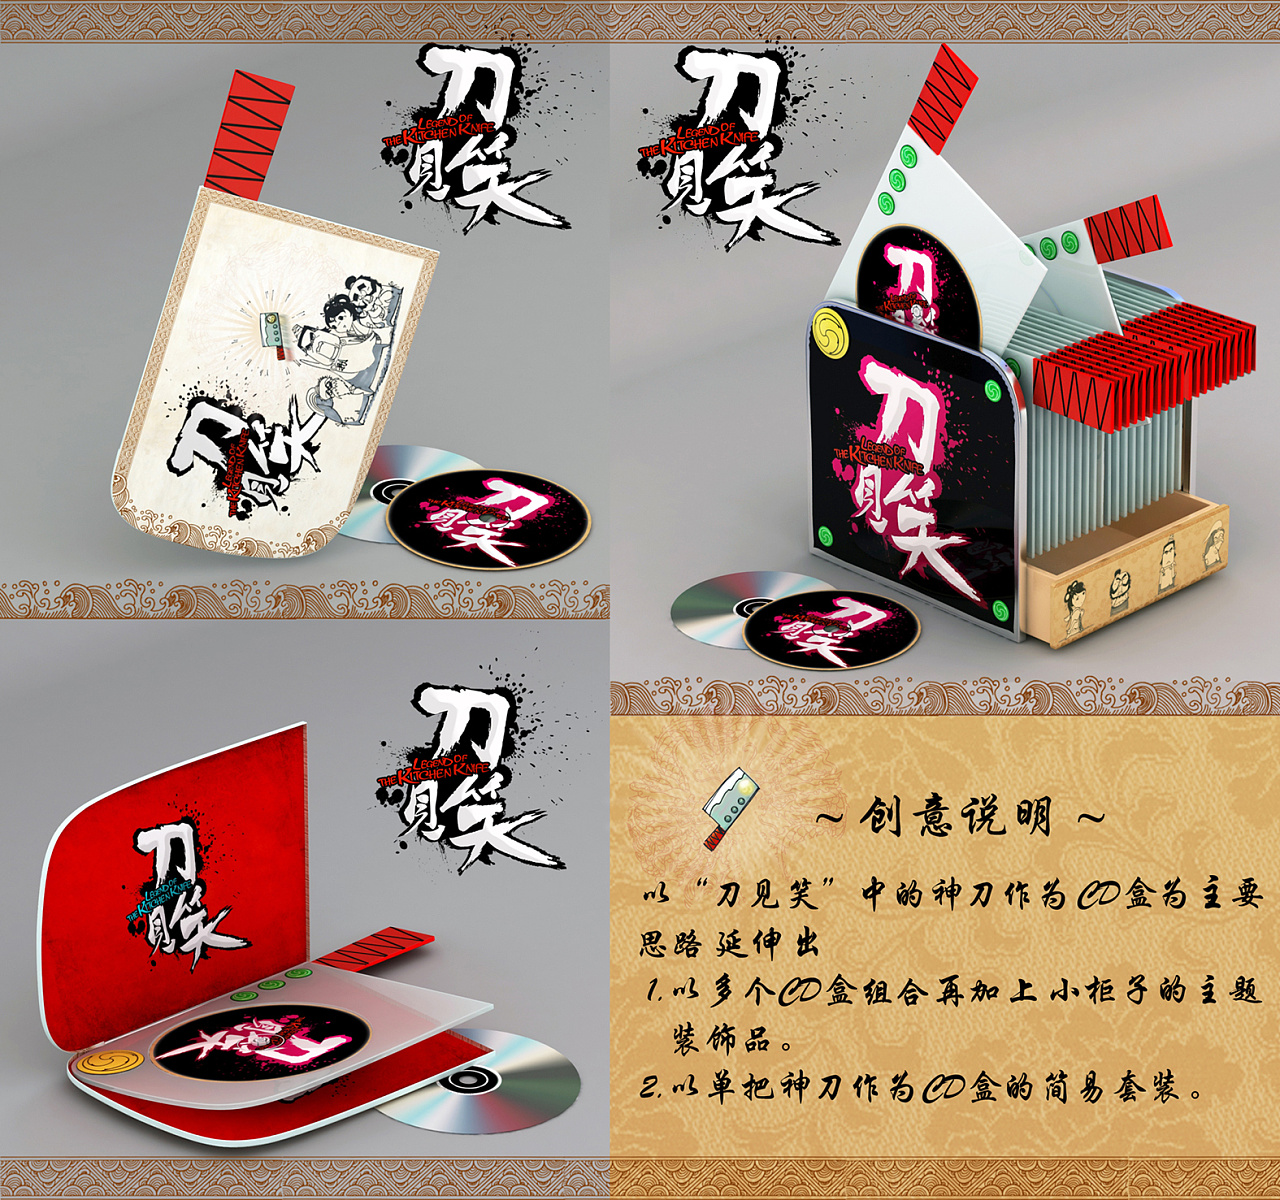 《刀见笑》衍生产品设计【cd盒】